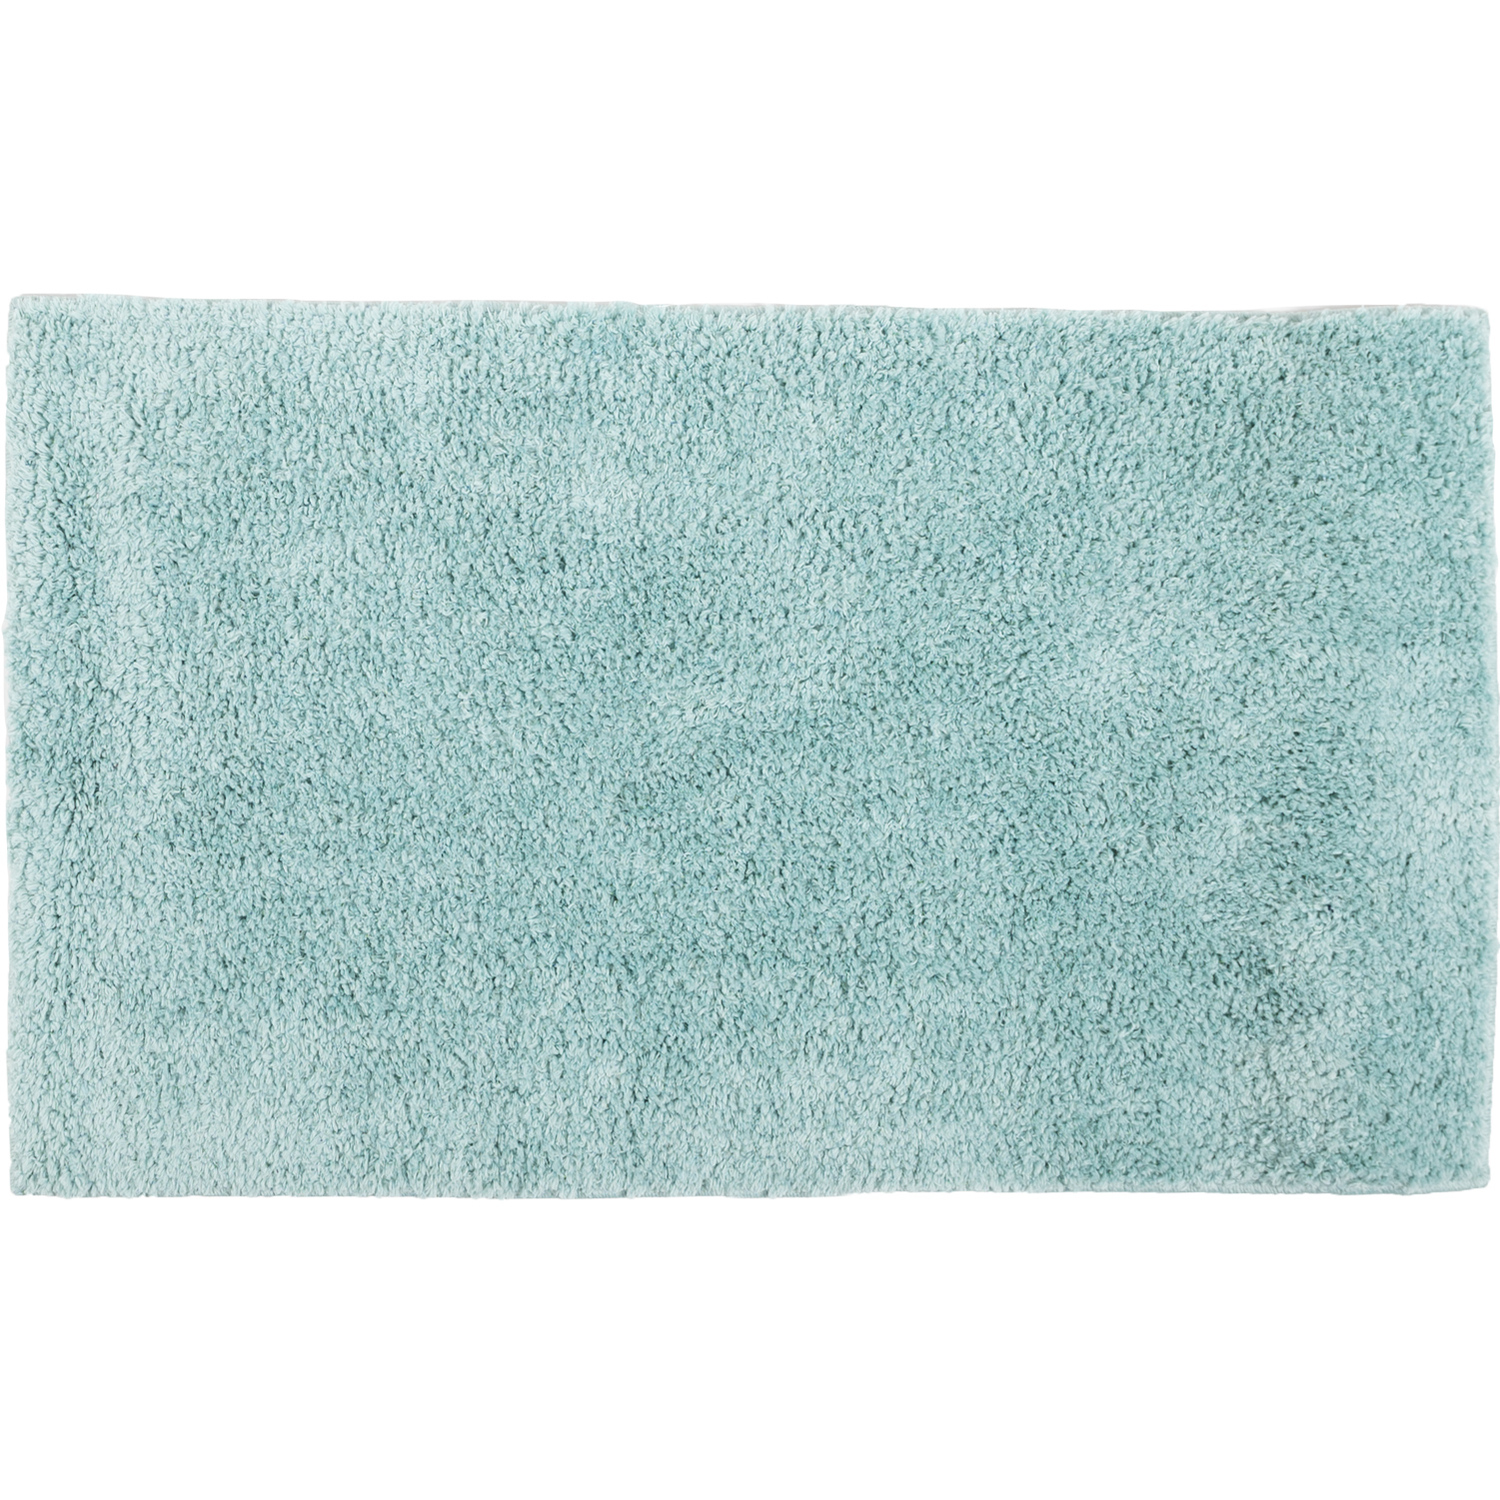 Dakota - Bath mat, 18"x30" - Green mint